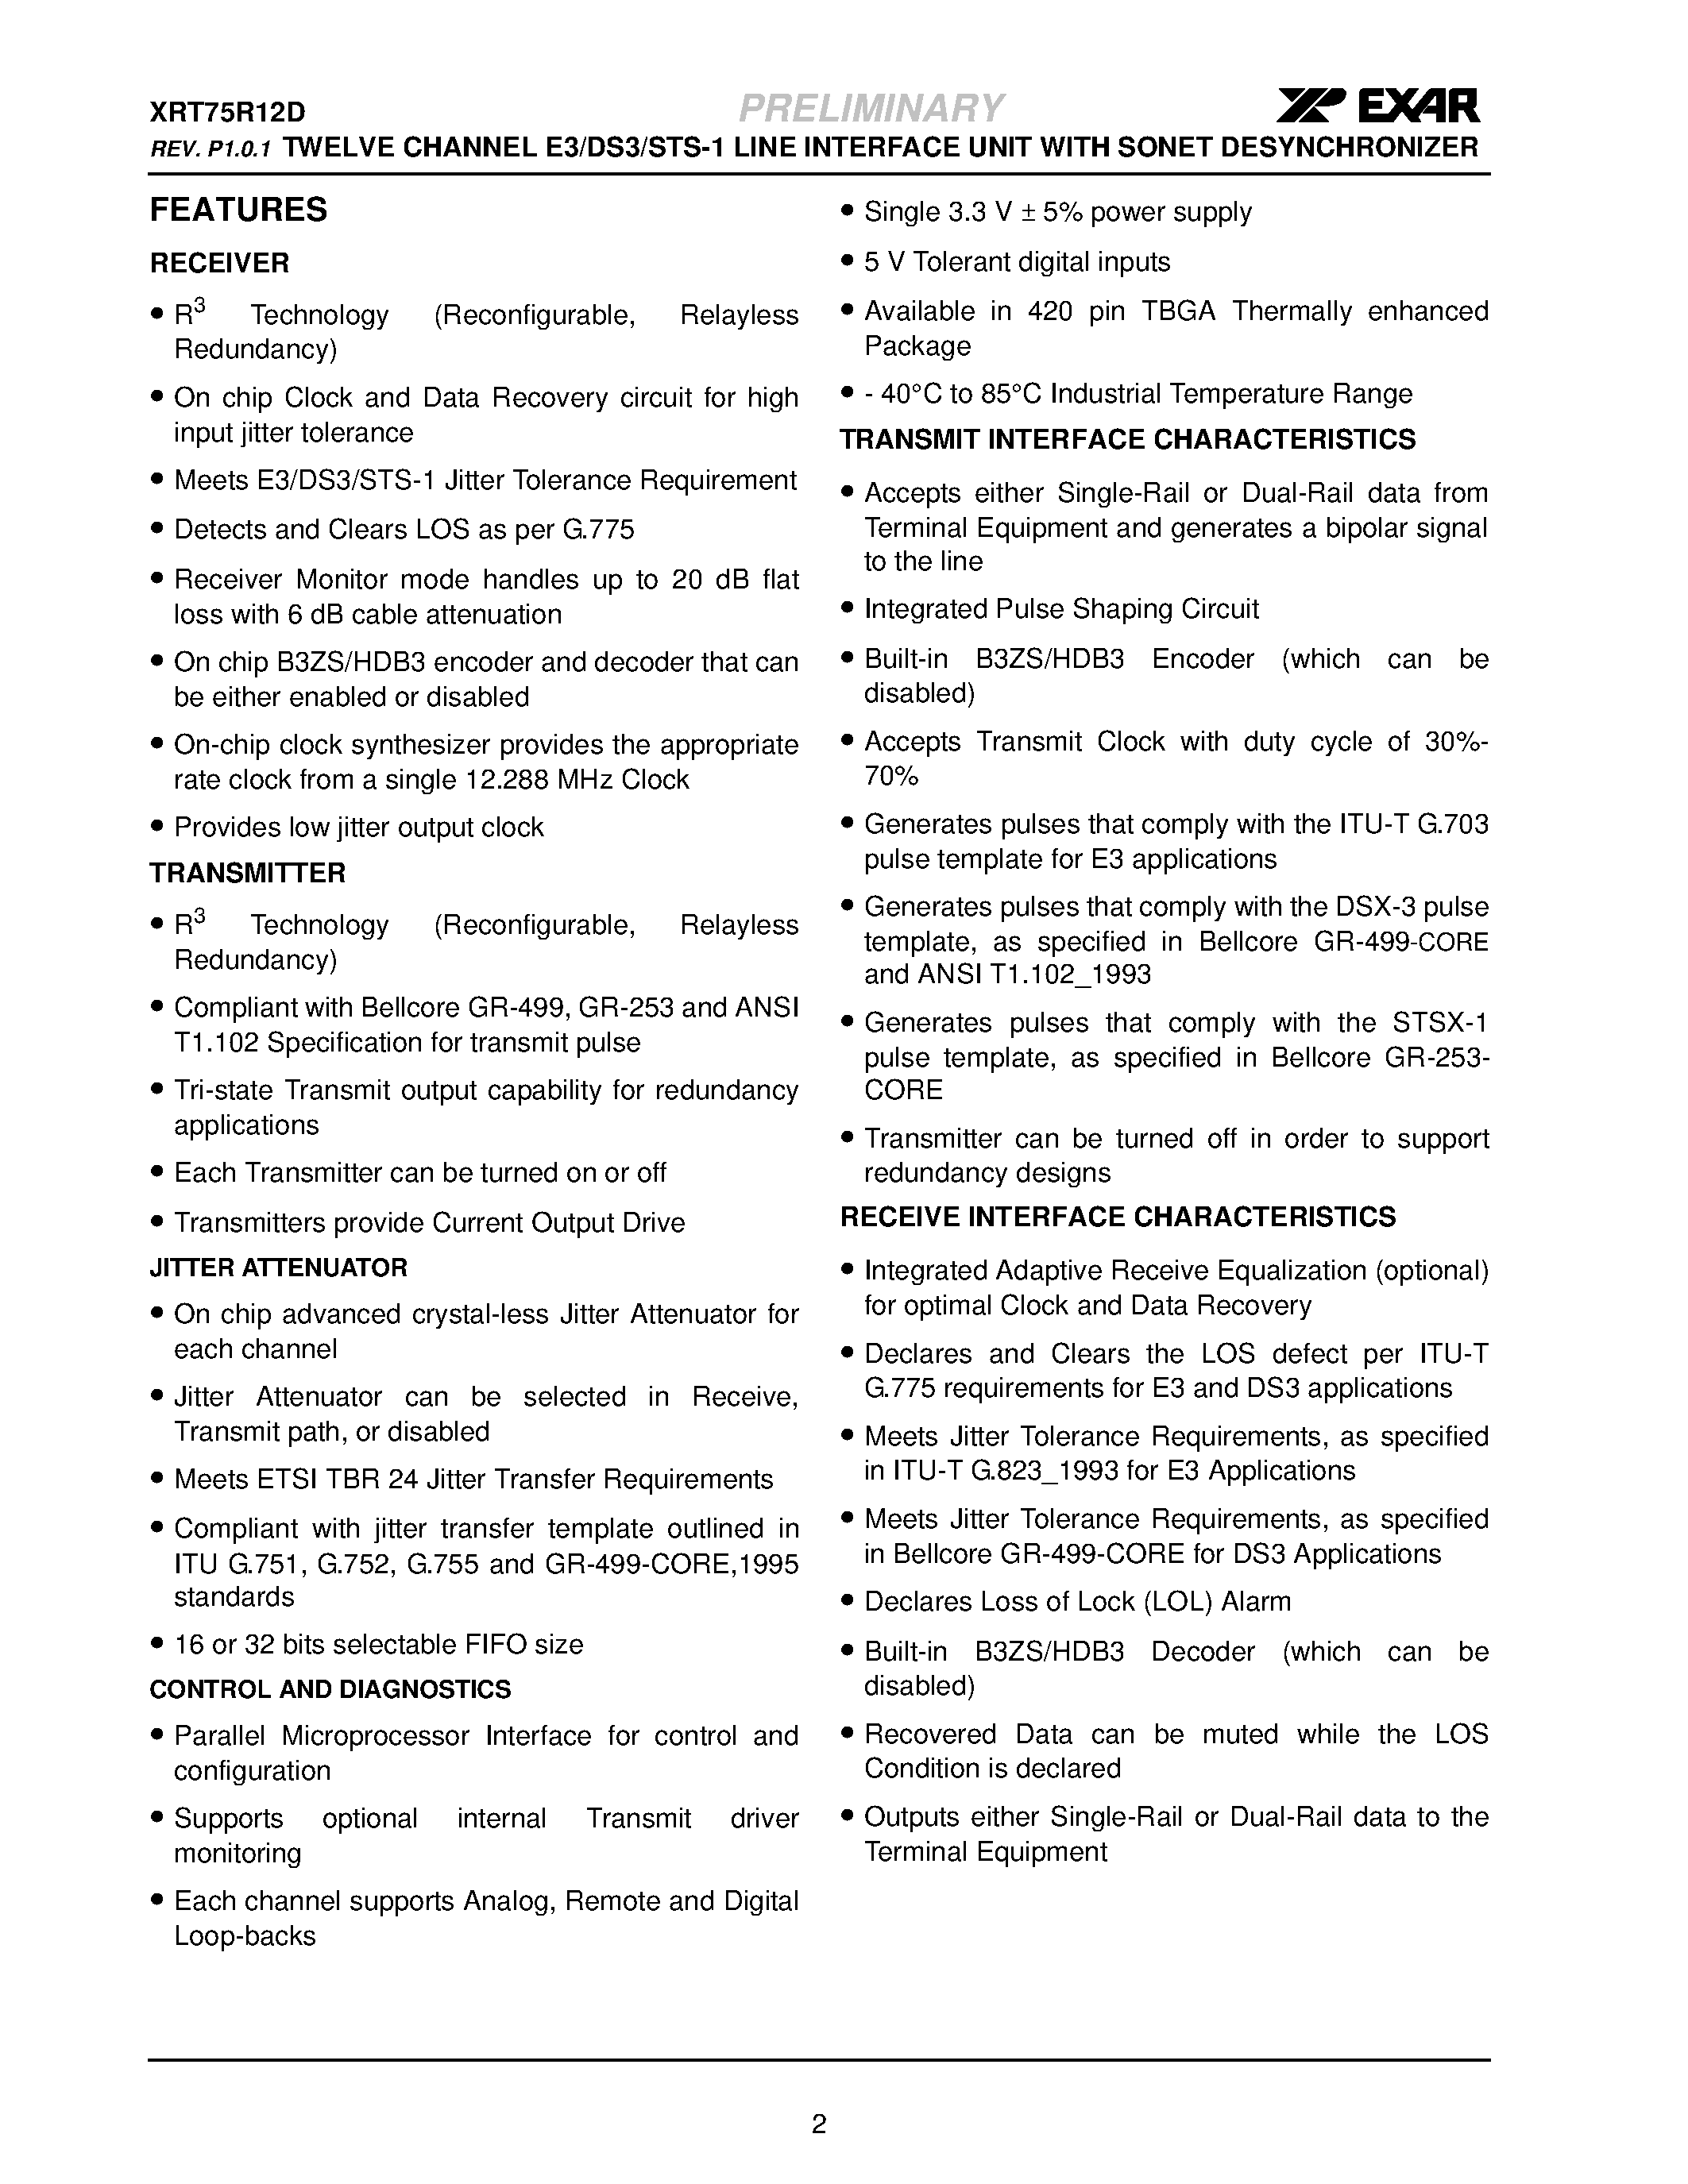 Datasheet XRT75R12D - TWELVE CHANNEL E3/DS3/STS-1 LINE INTERFACE UNIT page 2